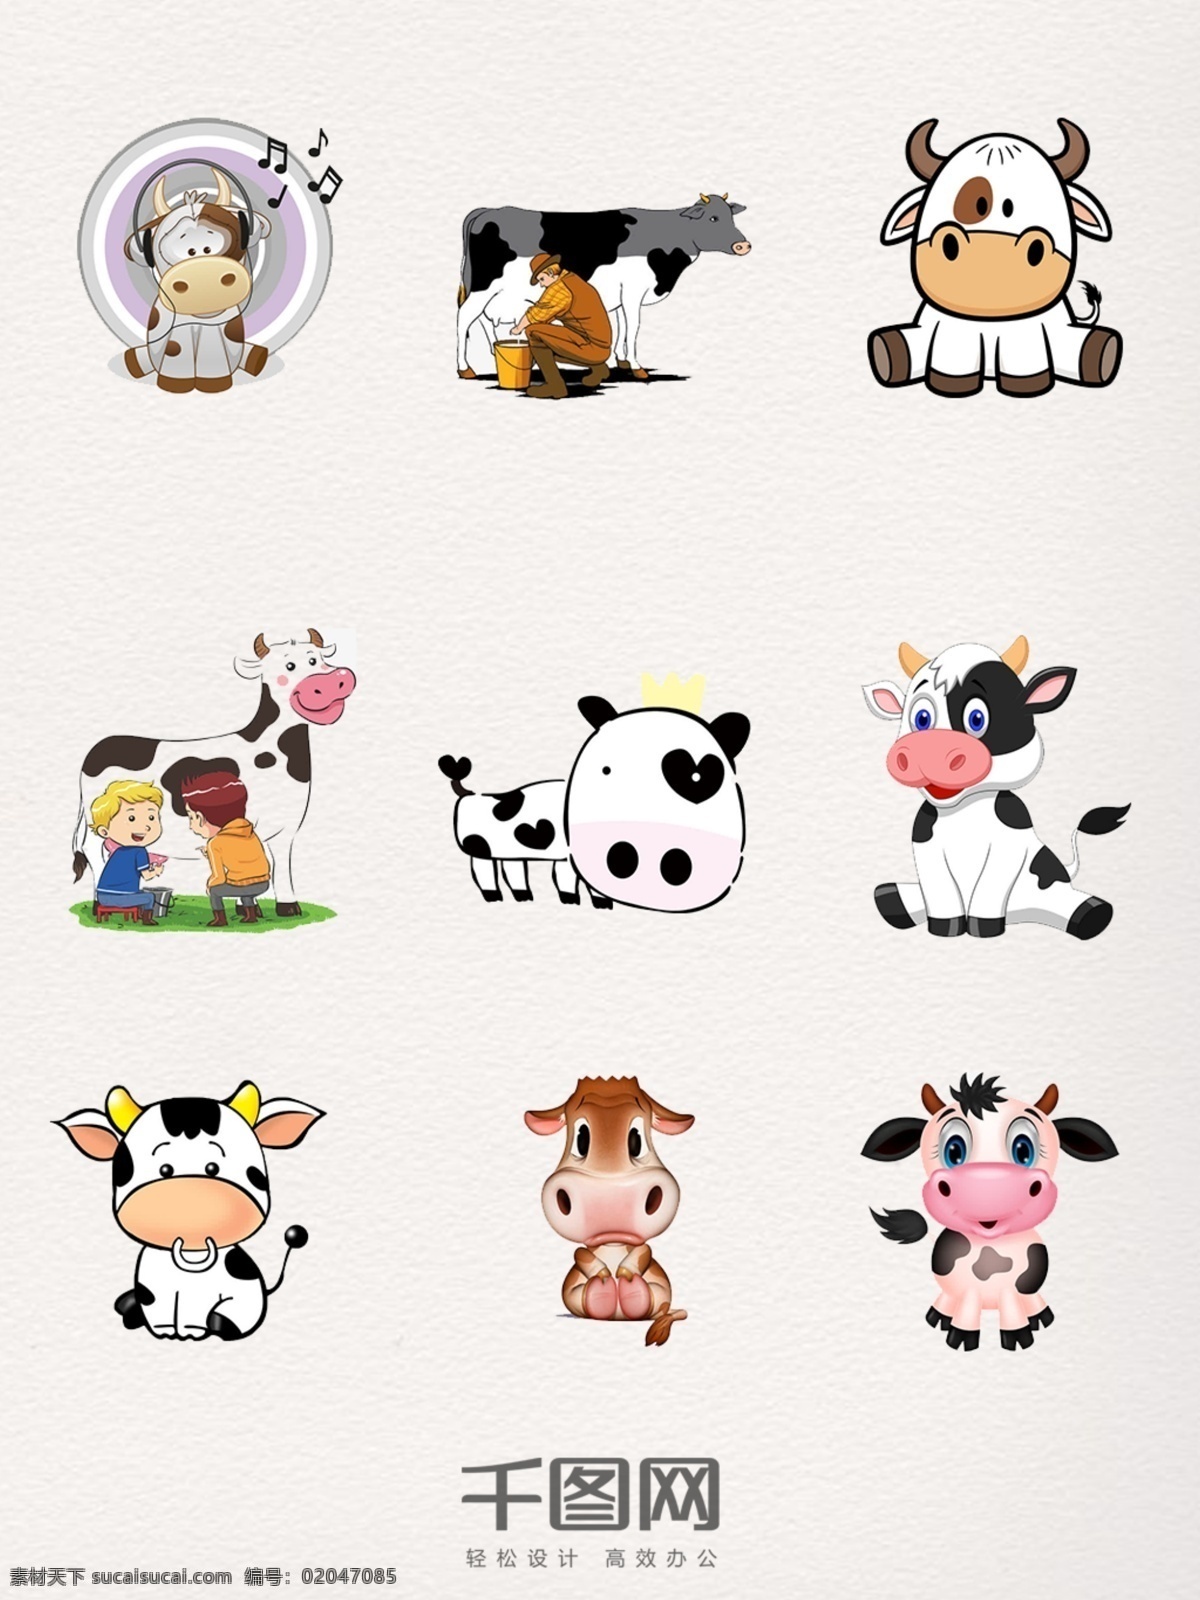 奶牛 装饰 图案 元素 奶牛装饰 奶牛图案 奶牛设计 奶牛元素 奶牛素材 奶牛图片 奶牛卡通